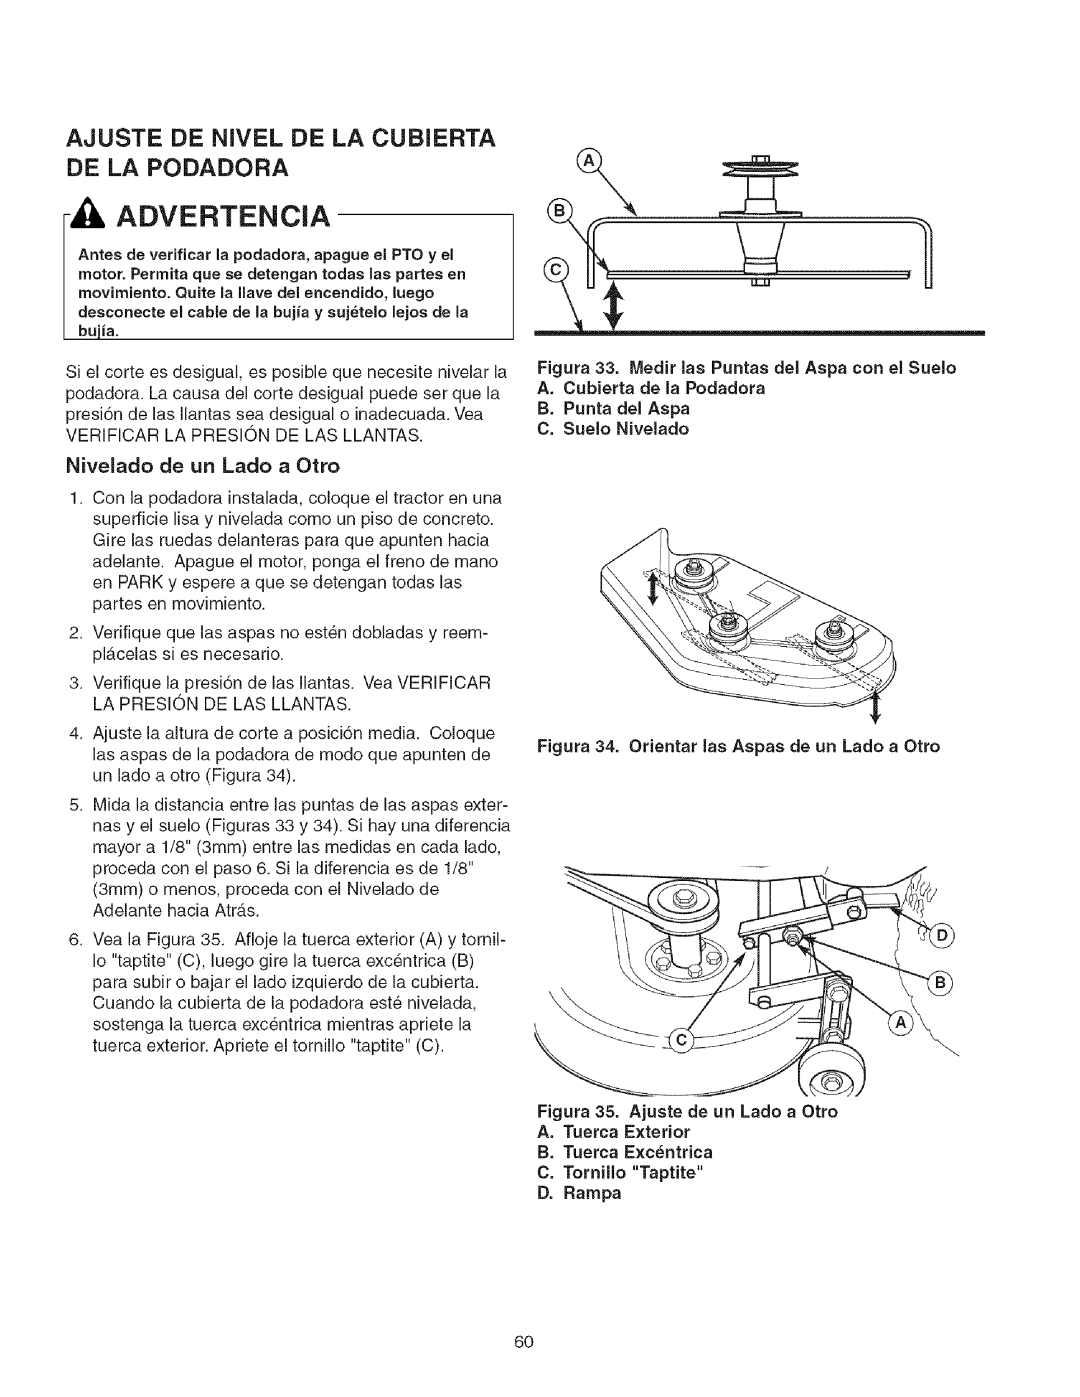 Craftsman 107.2777 manual Ajuste De Nivel De La Cubierta De La Podadora, Advertencia, Nivelado de un Lado a Otto 